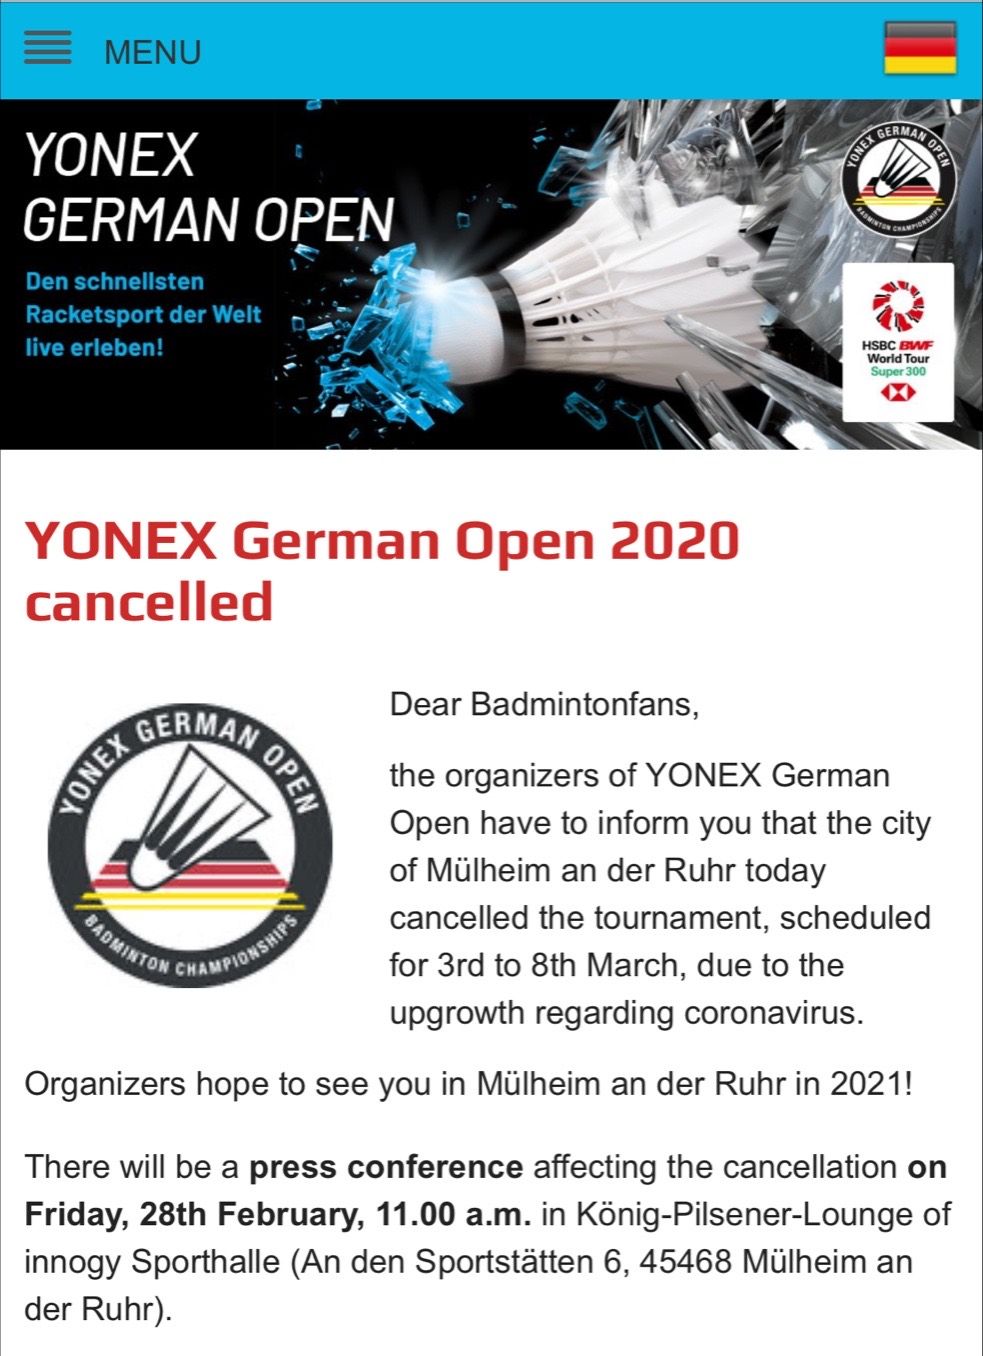  德国公开赛被迫取消。